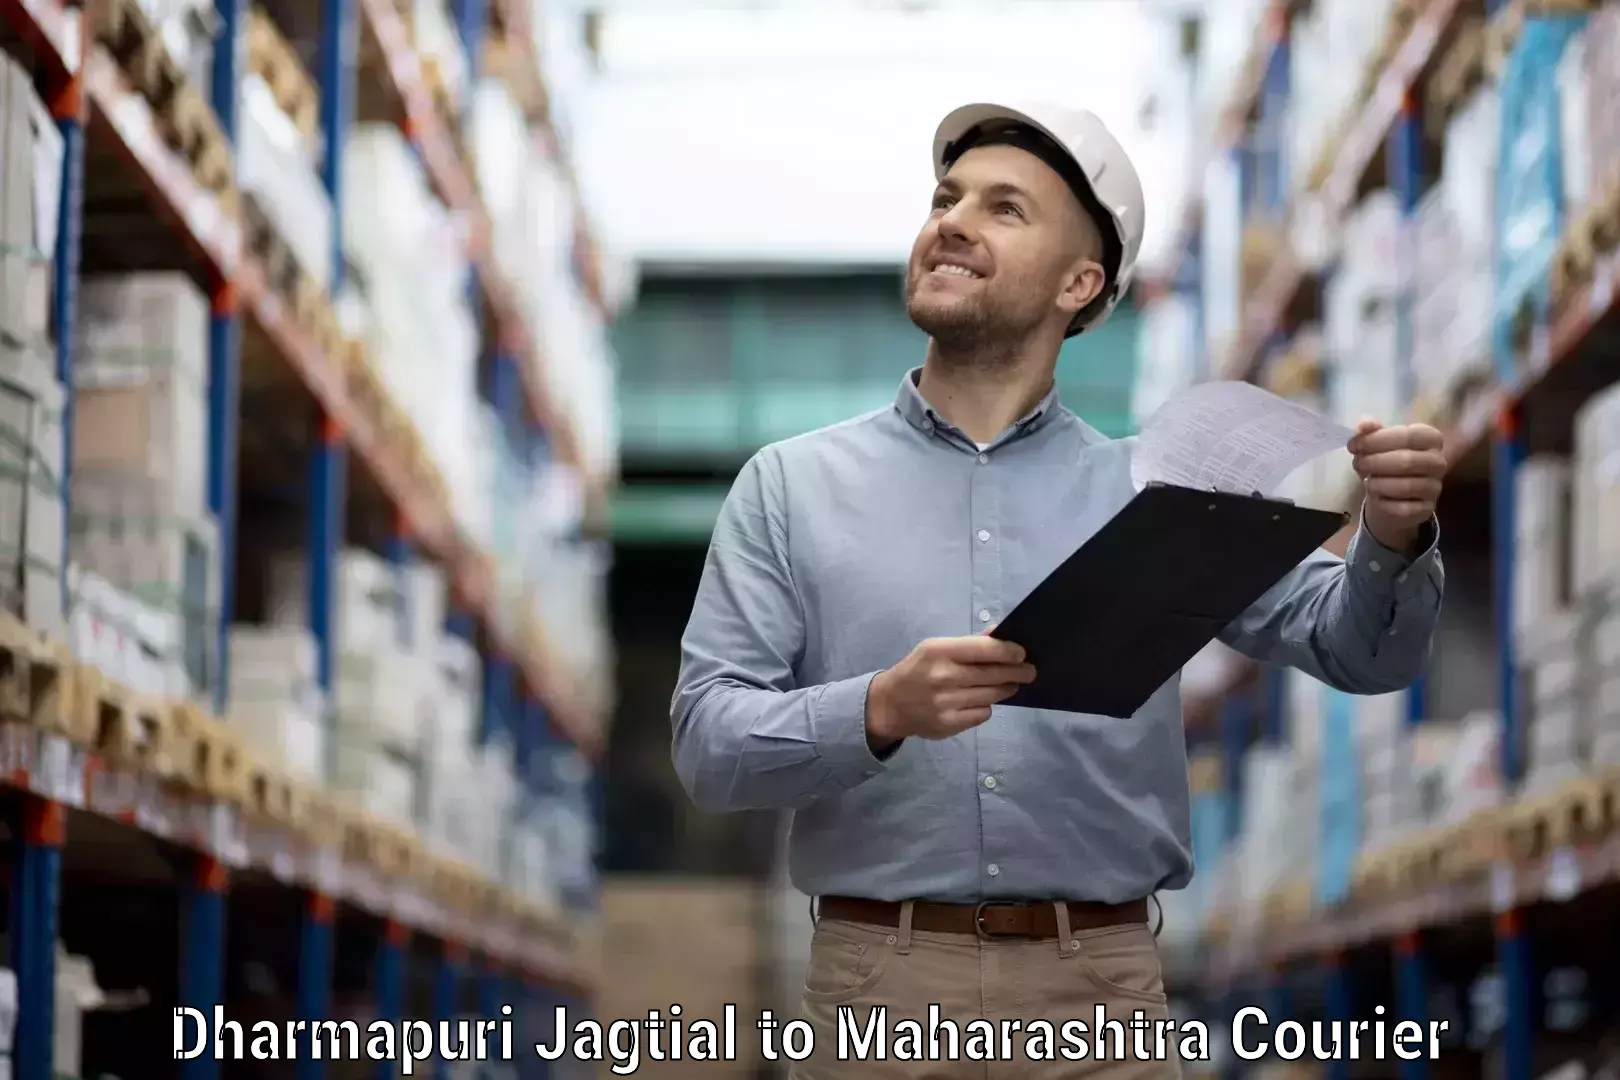 Nationwide courier service Dharmapuri Jagtial to IIIT Pune